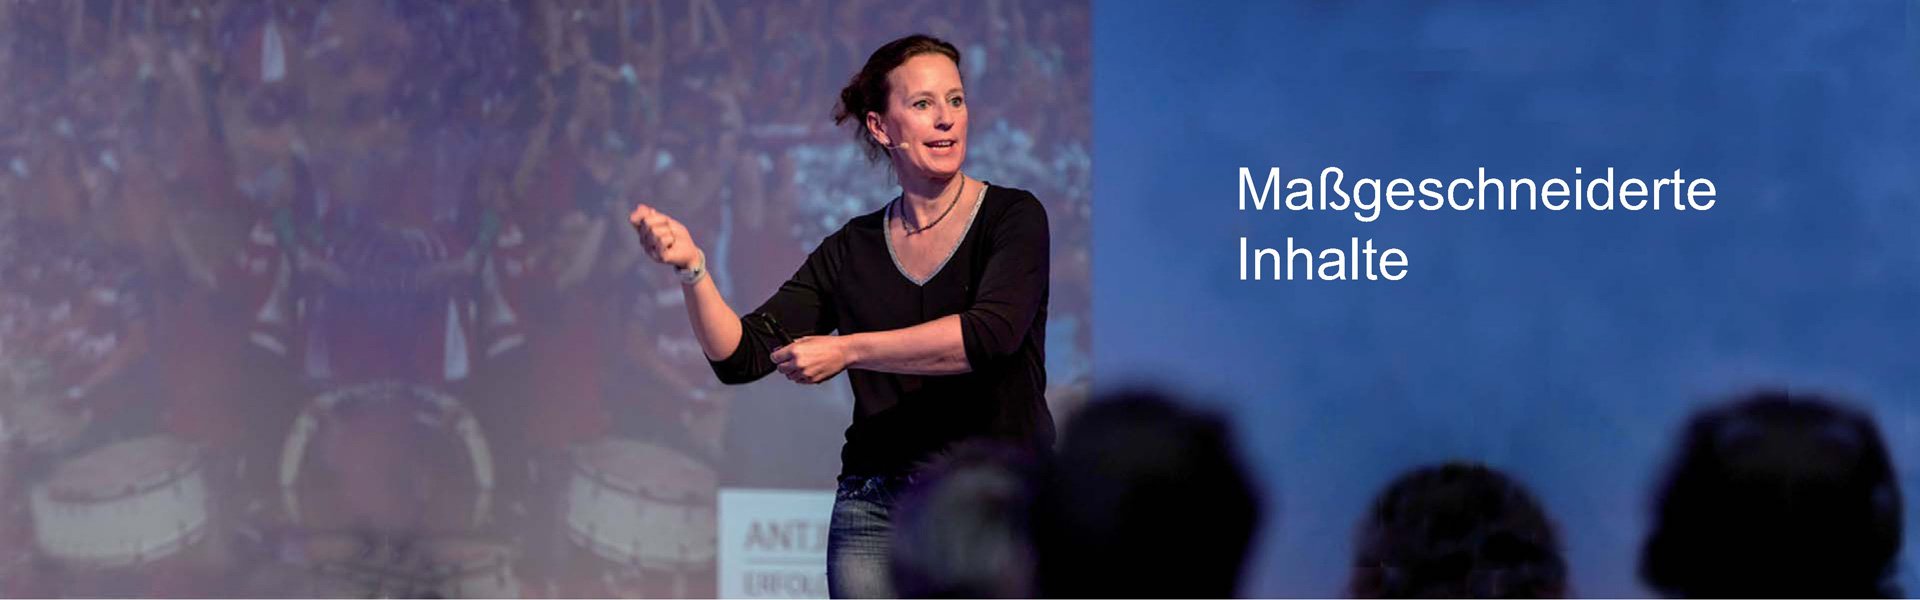 Vorträge von Antje Heimsoeth – erfrischende Impulse und horizonterweiternde Eindrücke